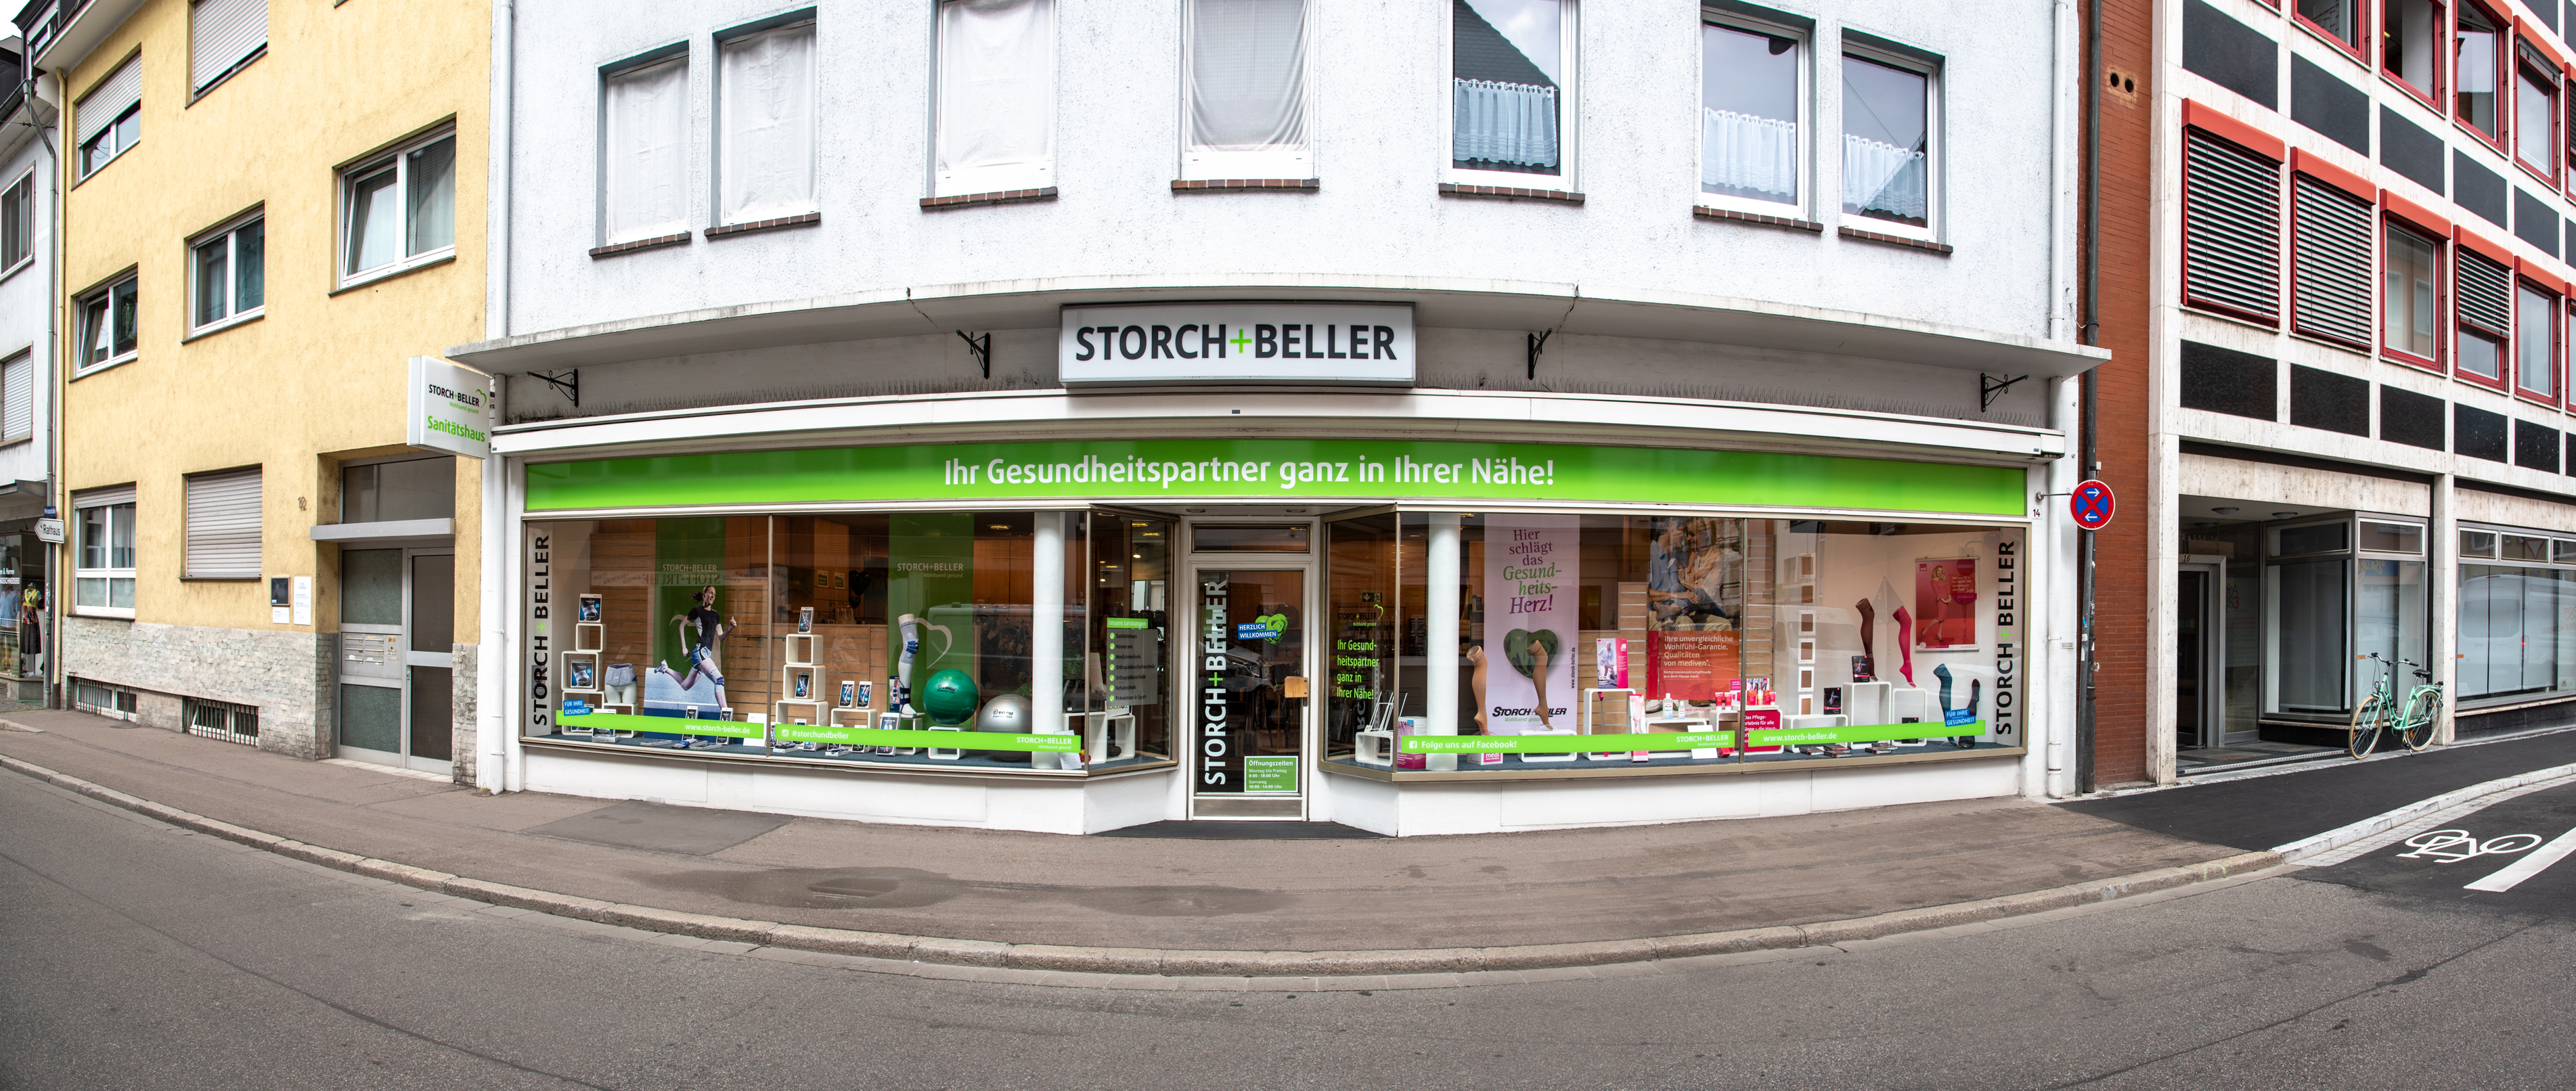 Bild 1 Storch und Beller & Co. GmbH in Freiburg